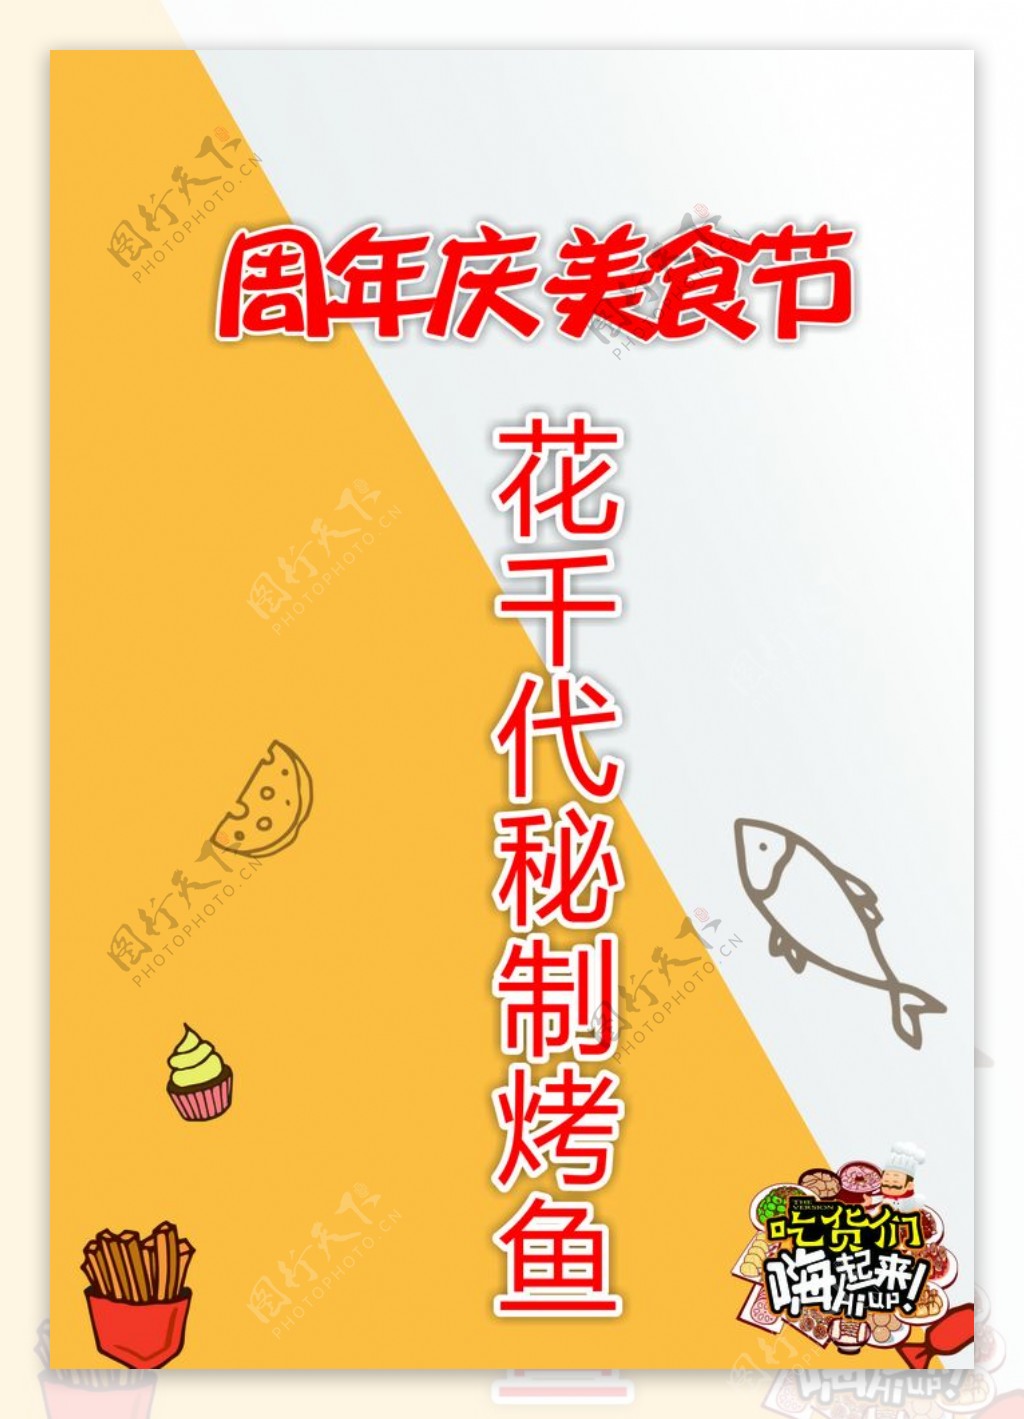 美食台卡花千代周年庆